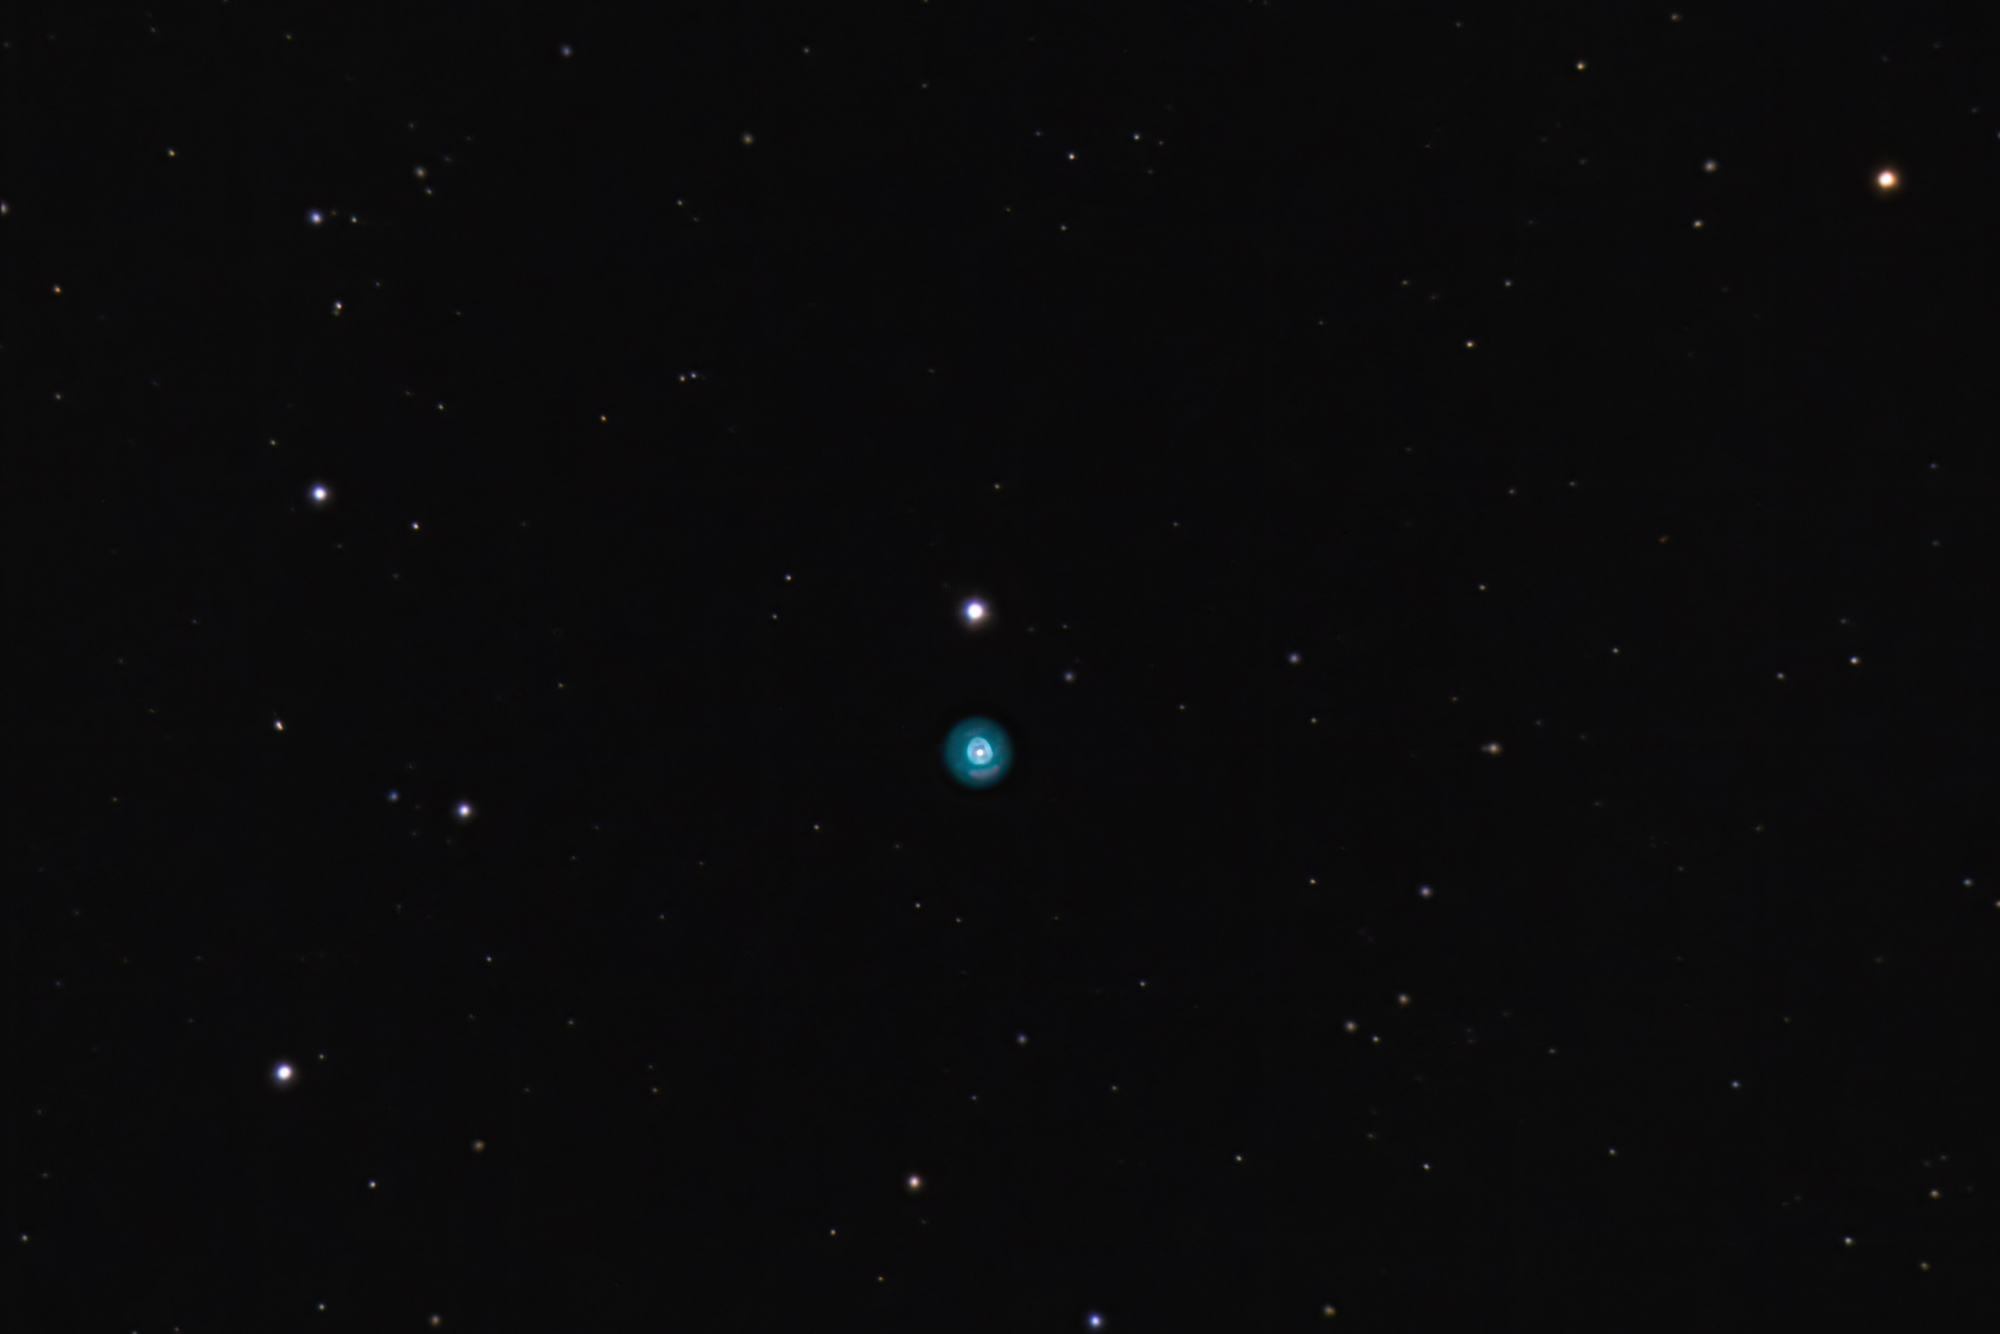 20200331-NGC2392-CLOWN-C8-XE3-L41X15-D10X15-SEQUATOR-SIRIL-PS-5.jpg